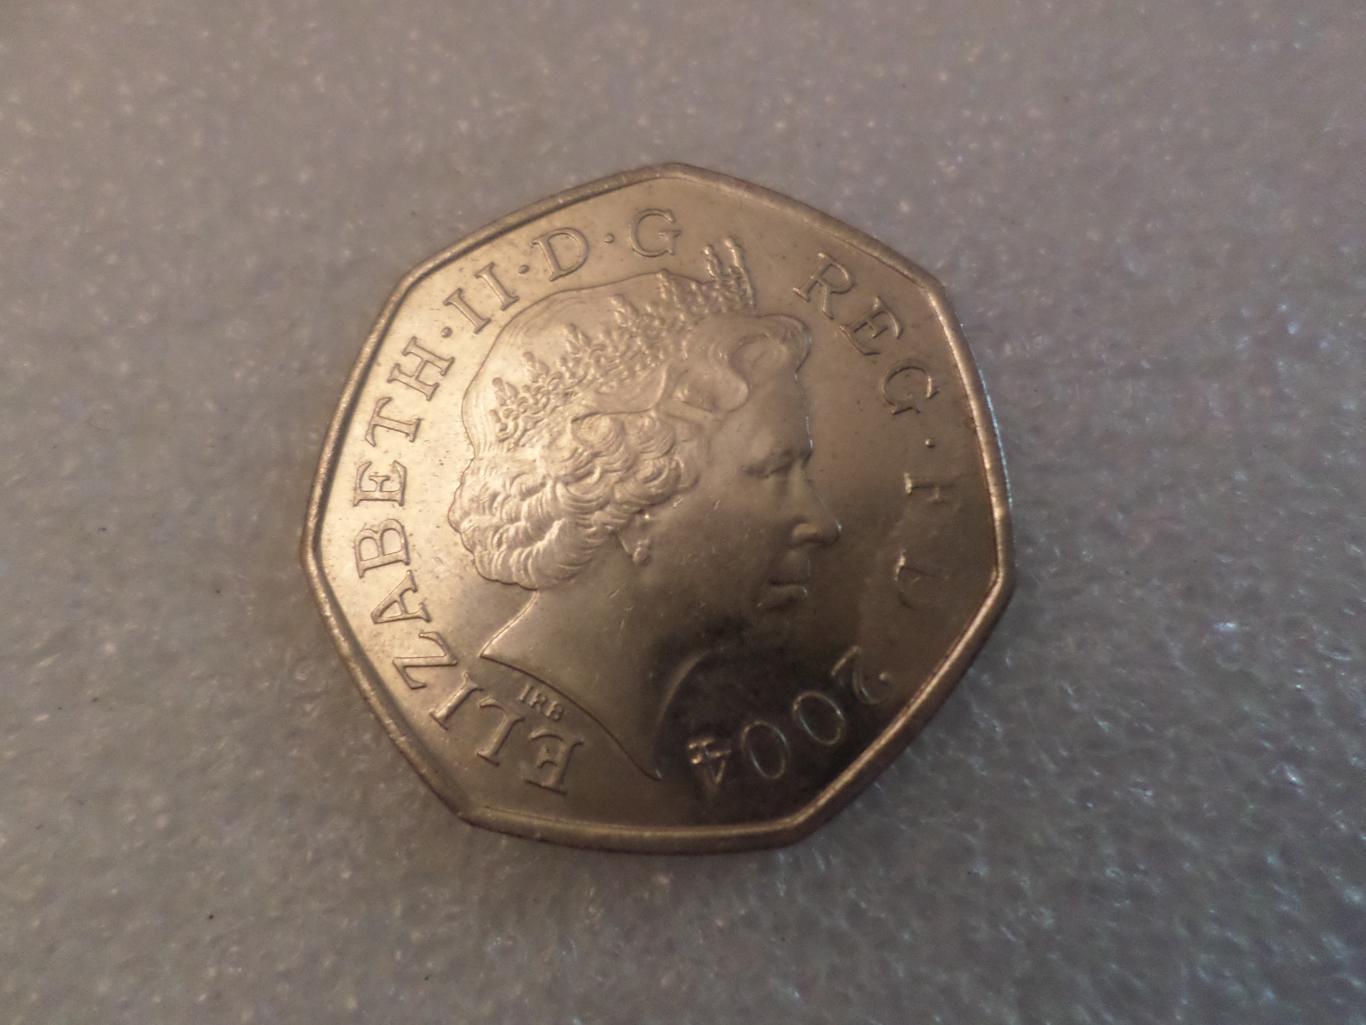 Монета 50 пенсов Великобритания 2004 г рекорд бега на 1 милю 1